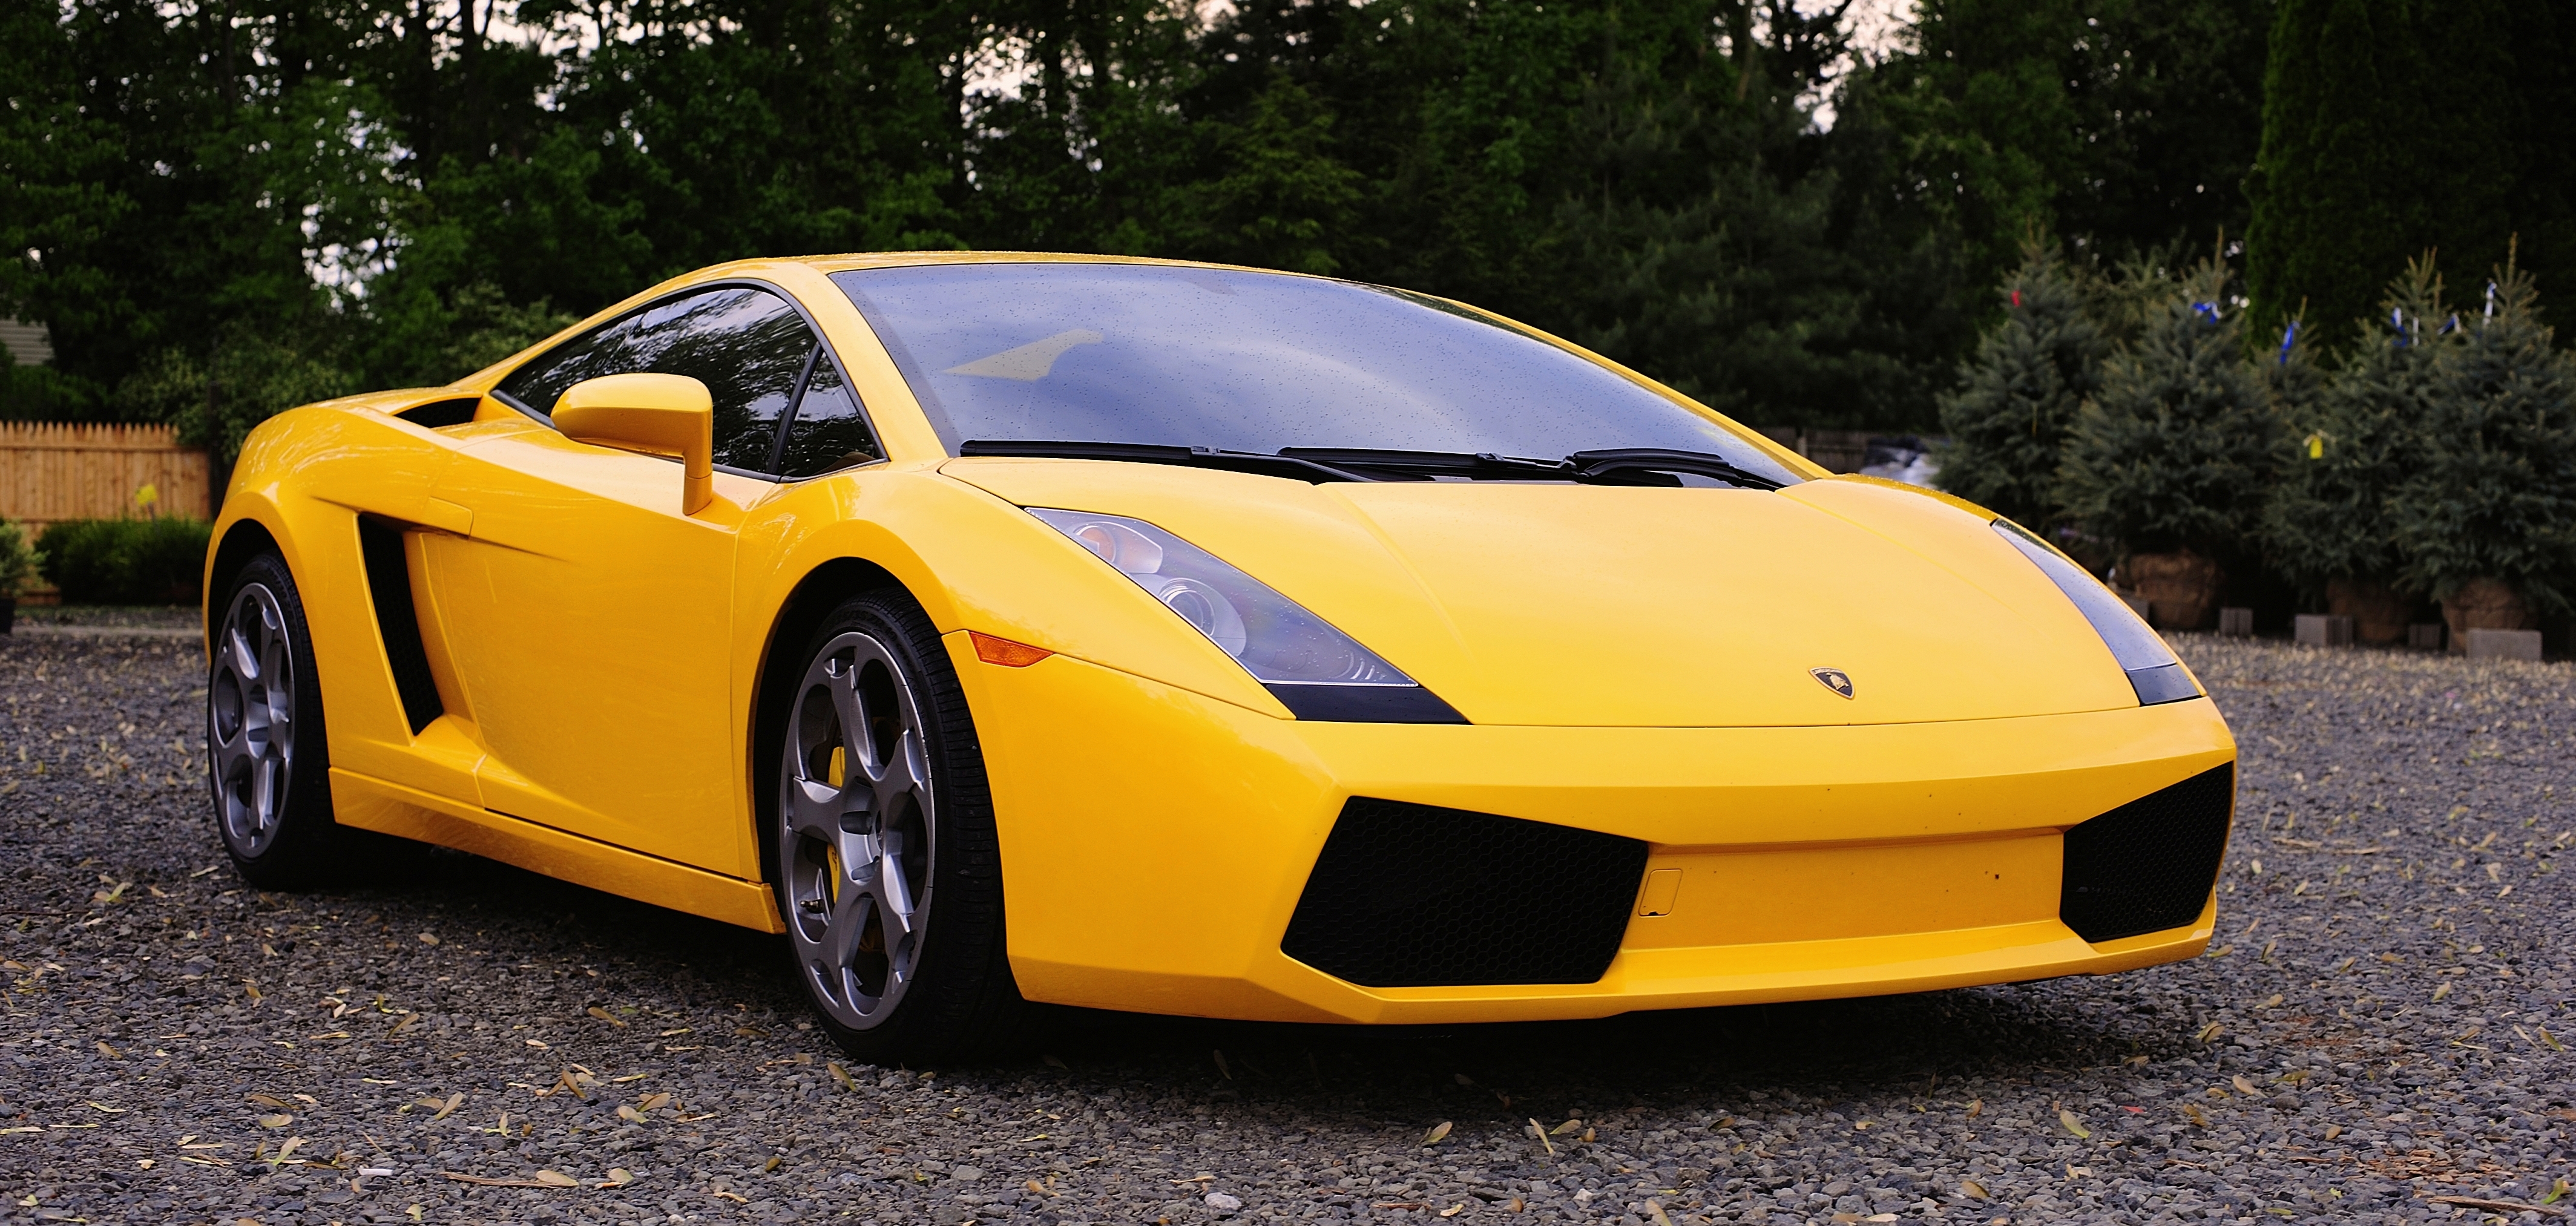 Archivo:Yellow Lamborghini Gallardo  - Wikipedia, la enciclopedia  libre